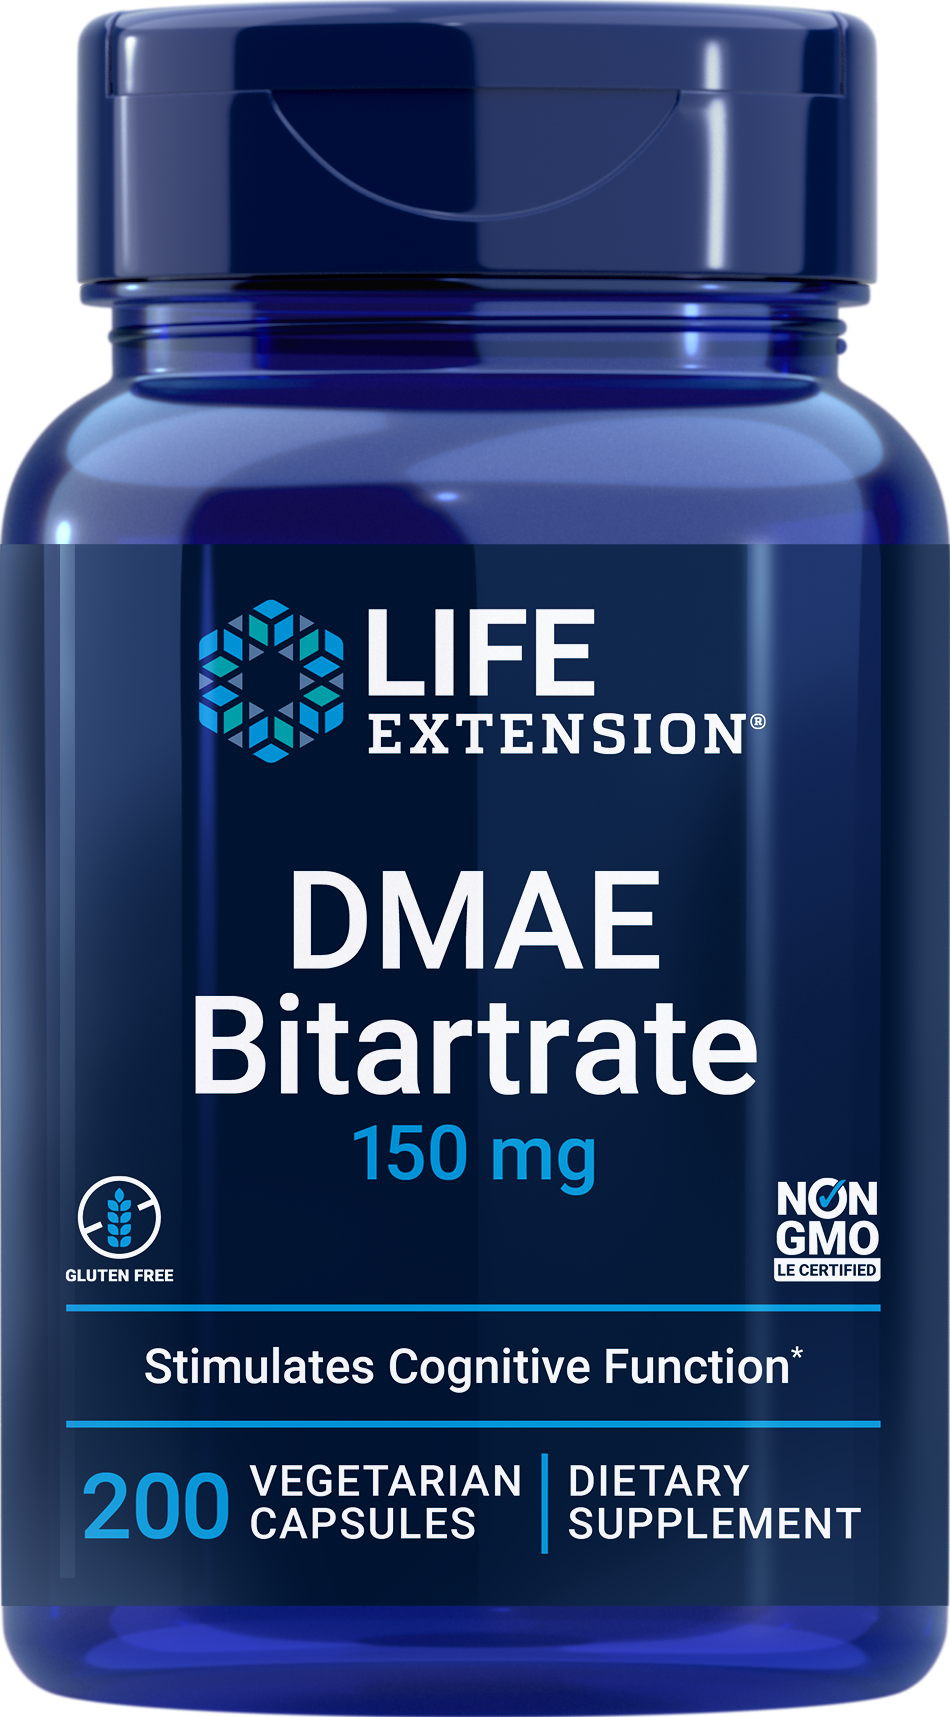 DMAE Bitartrate